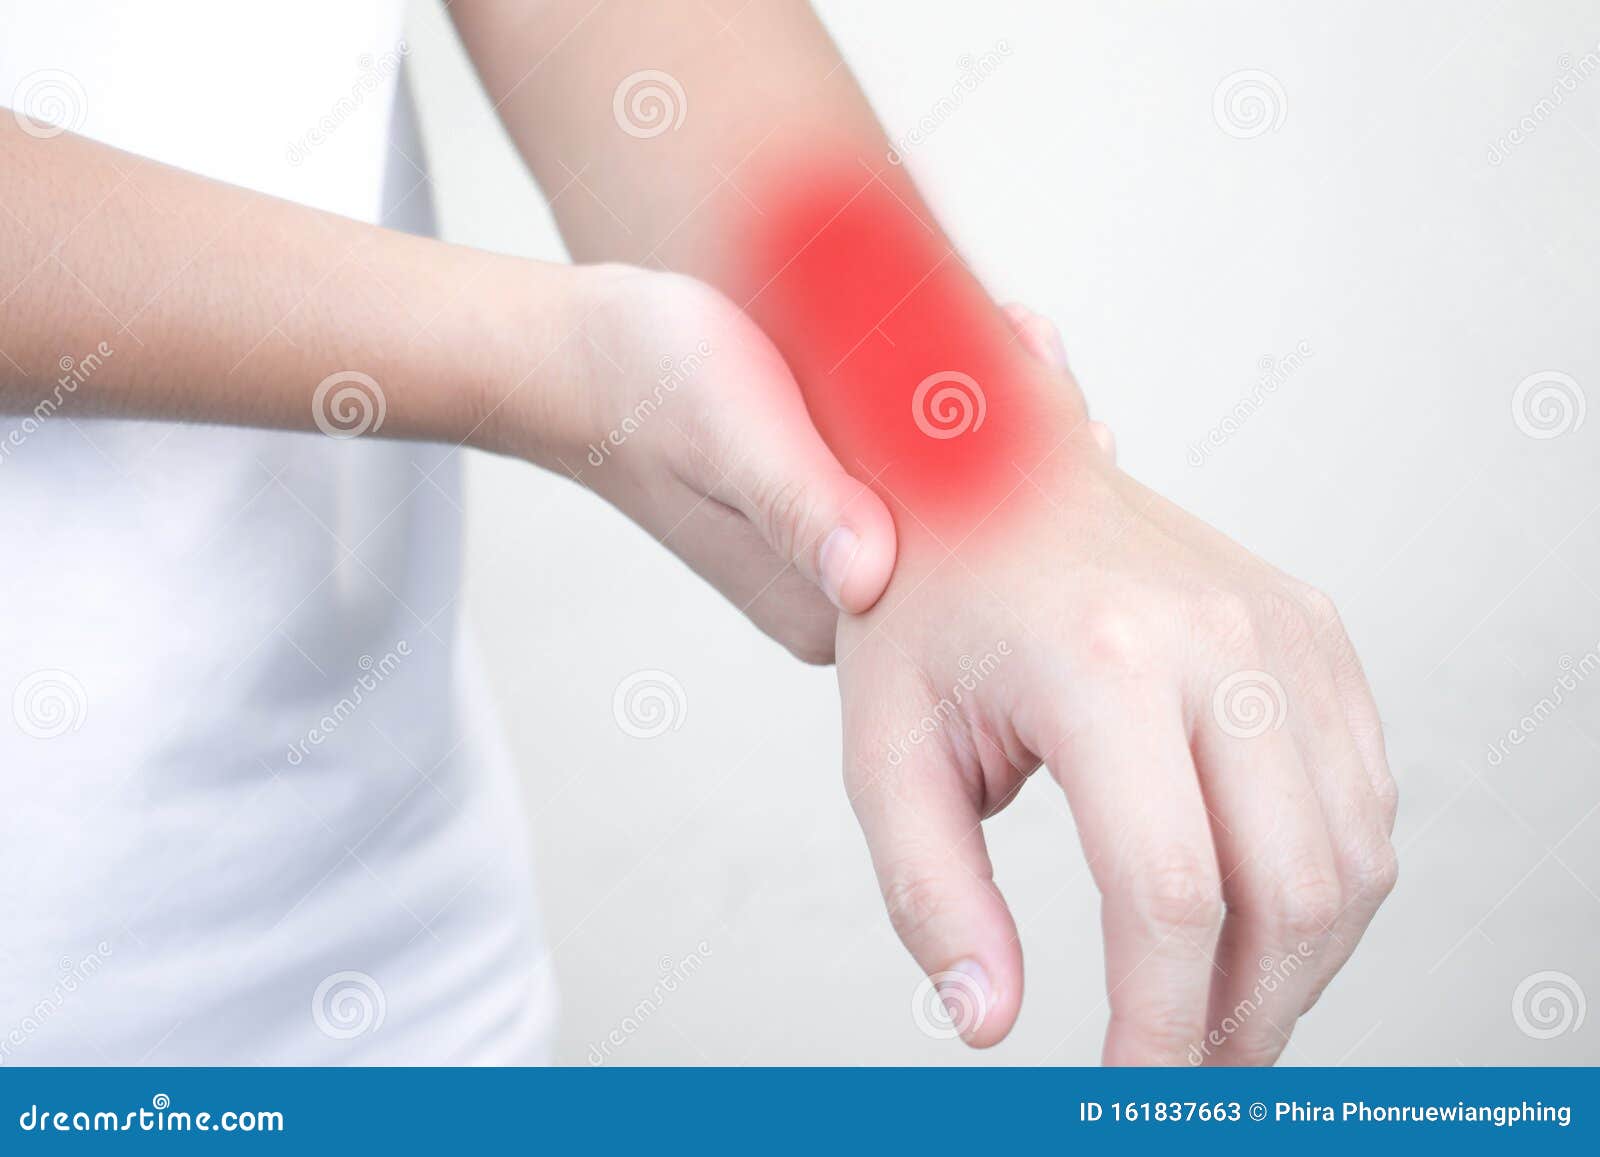 Болит рука запястье чем лечить. Болит рука выше запястья. Боль в руке. Острая боль в запястье левой руки. Болит рука выше запястья причины.